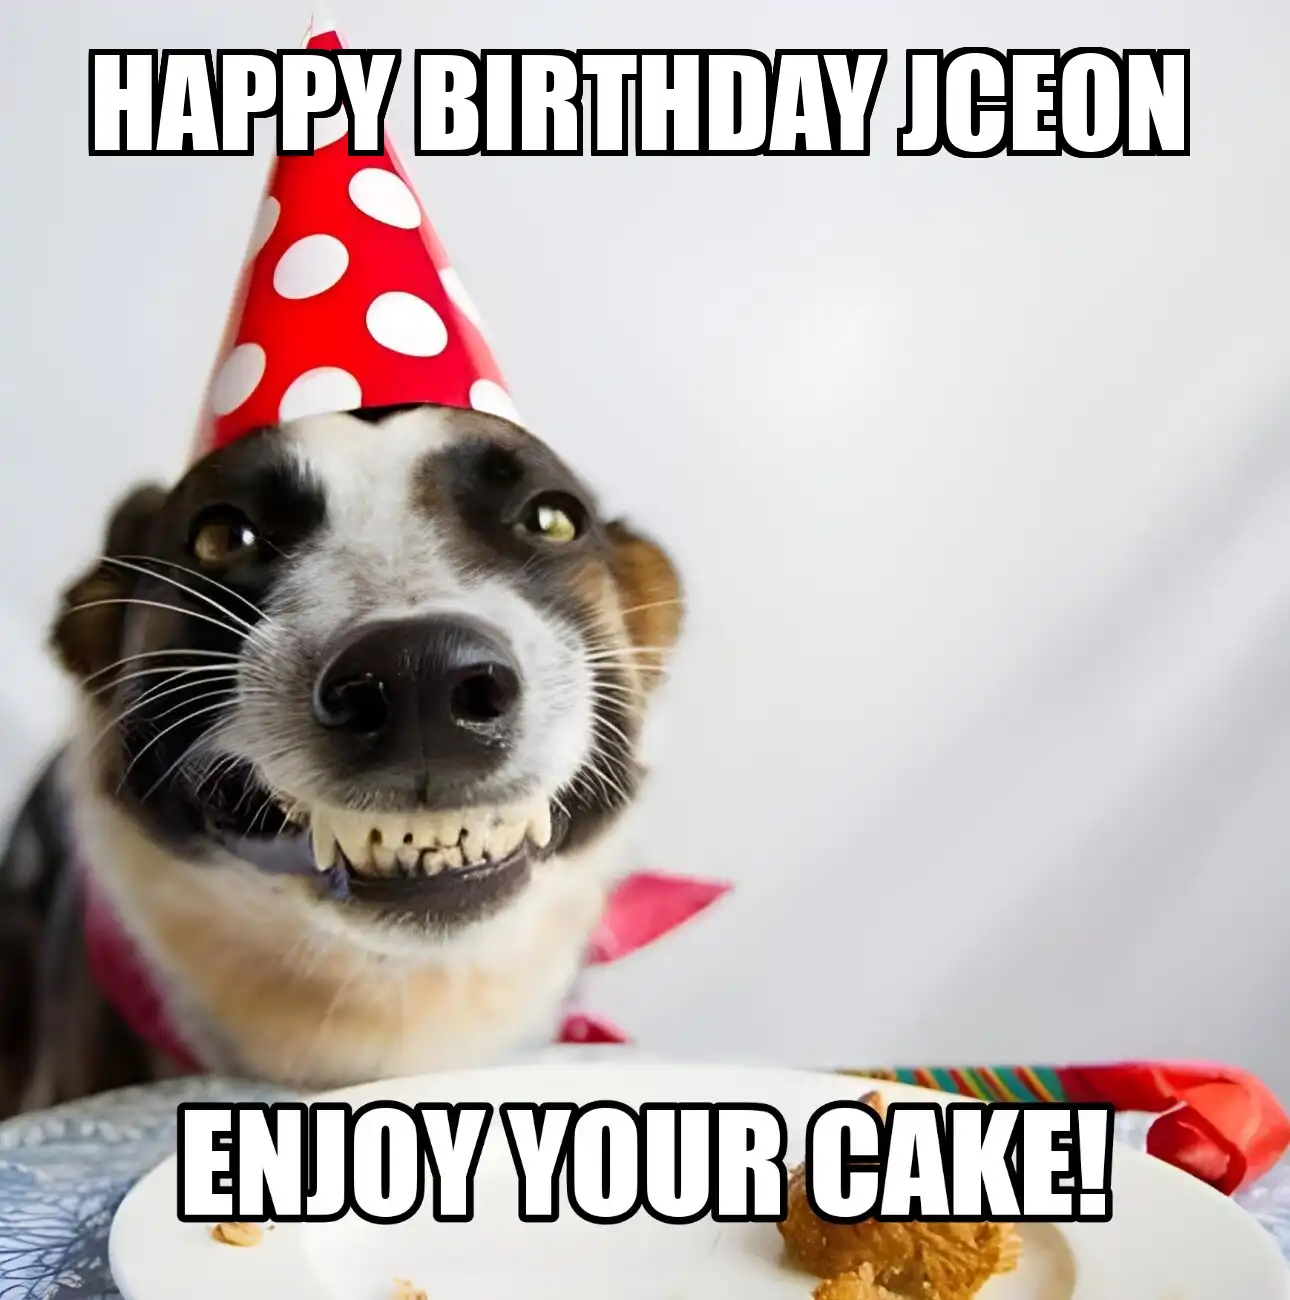 Happy Birthday Jceon Enjoy Your Cake Dog Meme